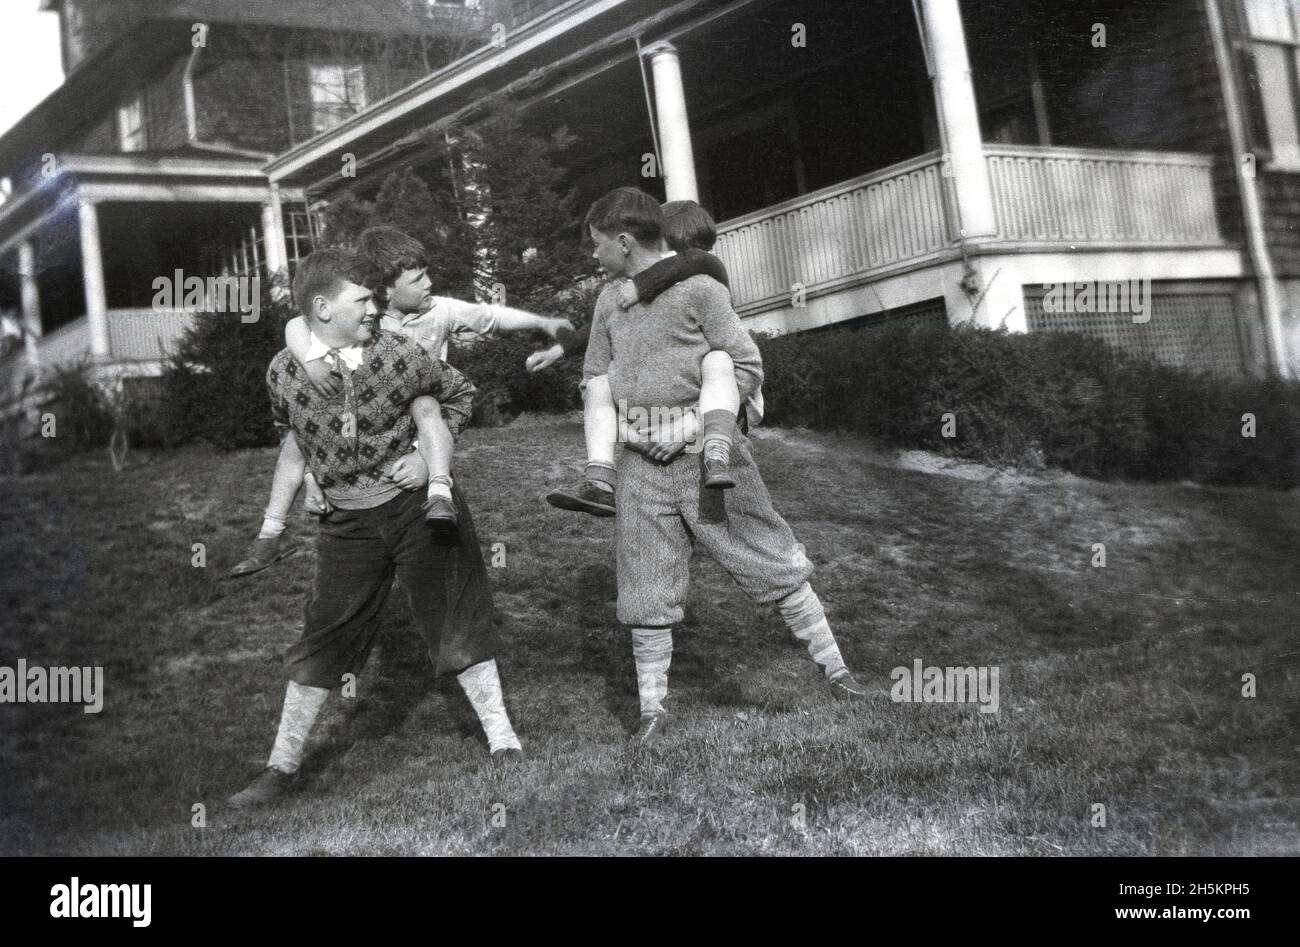 vers 1940, historique, quatre garçons jouant sur une zone herbeuse à l'extérieur de la véranda d'une maison, avec les deux garçons plus âgés portant les deux jeunes garçons sur leur dos.Les garçons plus âgés portent des culottes ou des culottes qui s'étendent juste en dessous du genou et sont portés avec de longues chaussettes.Aussi connu sous le nom de knickerbockeers - ou golfeurs plus ttos, comme ils s'étendent deux pouces sous le genou - ces pantalons de bagardy-kneed étaient un article populaire de vêtements de garçons aux États-Unis au début du XXe siècle. Banque D'Images